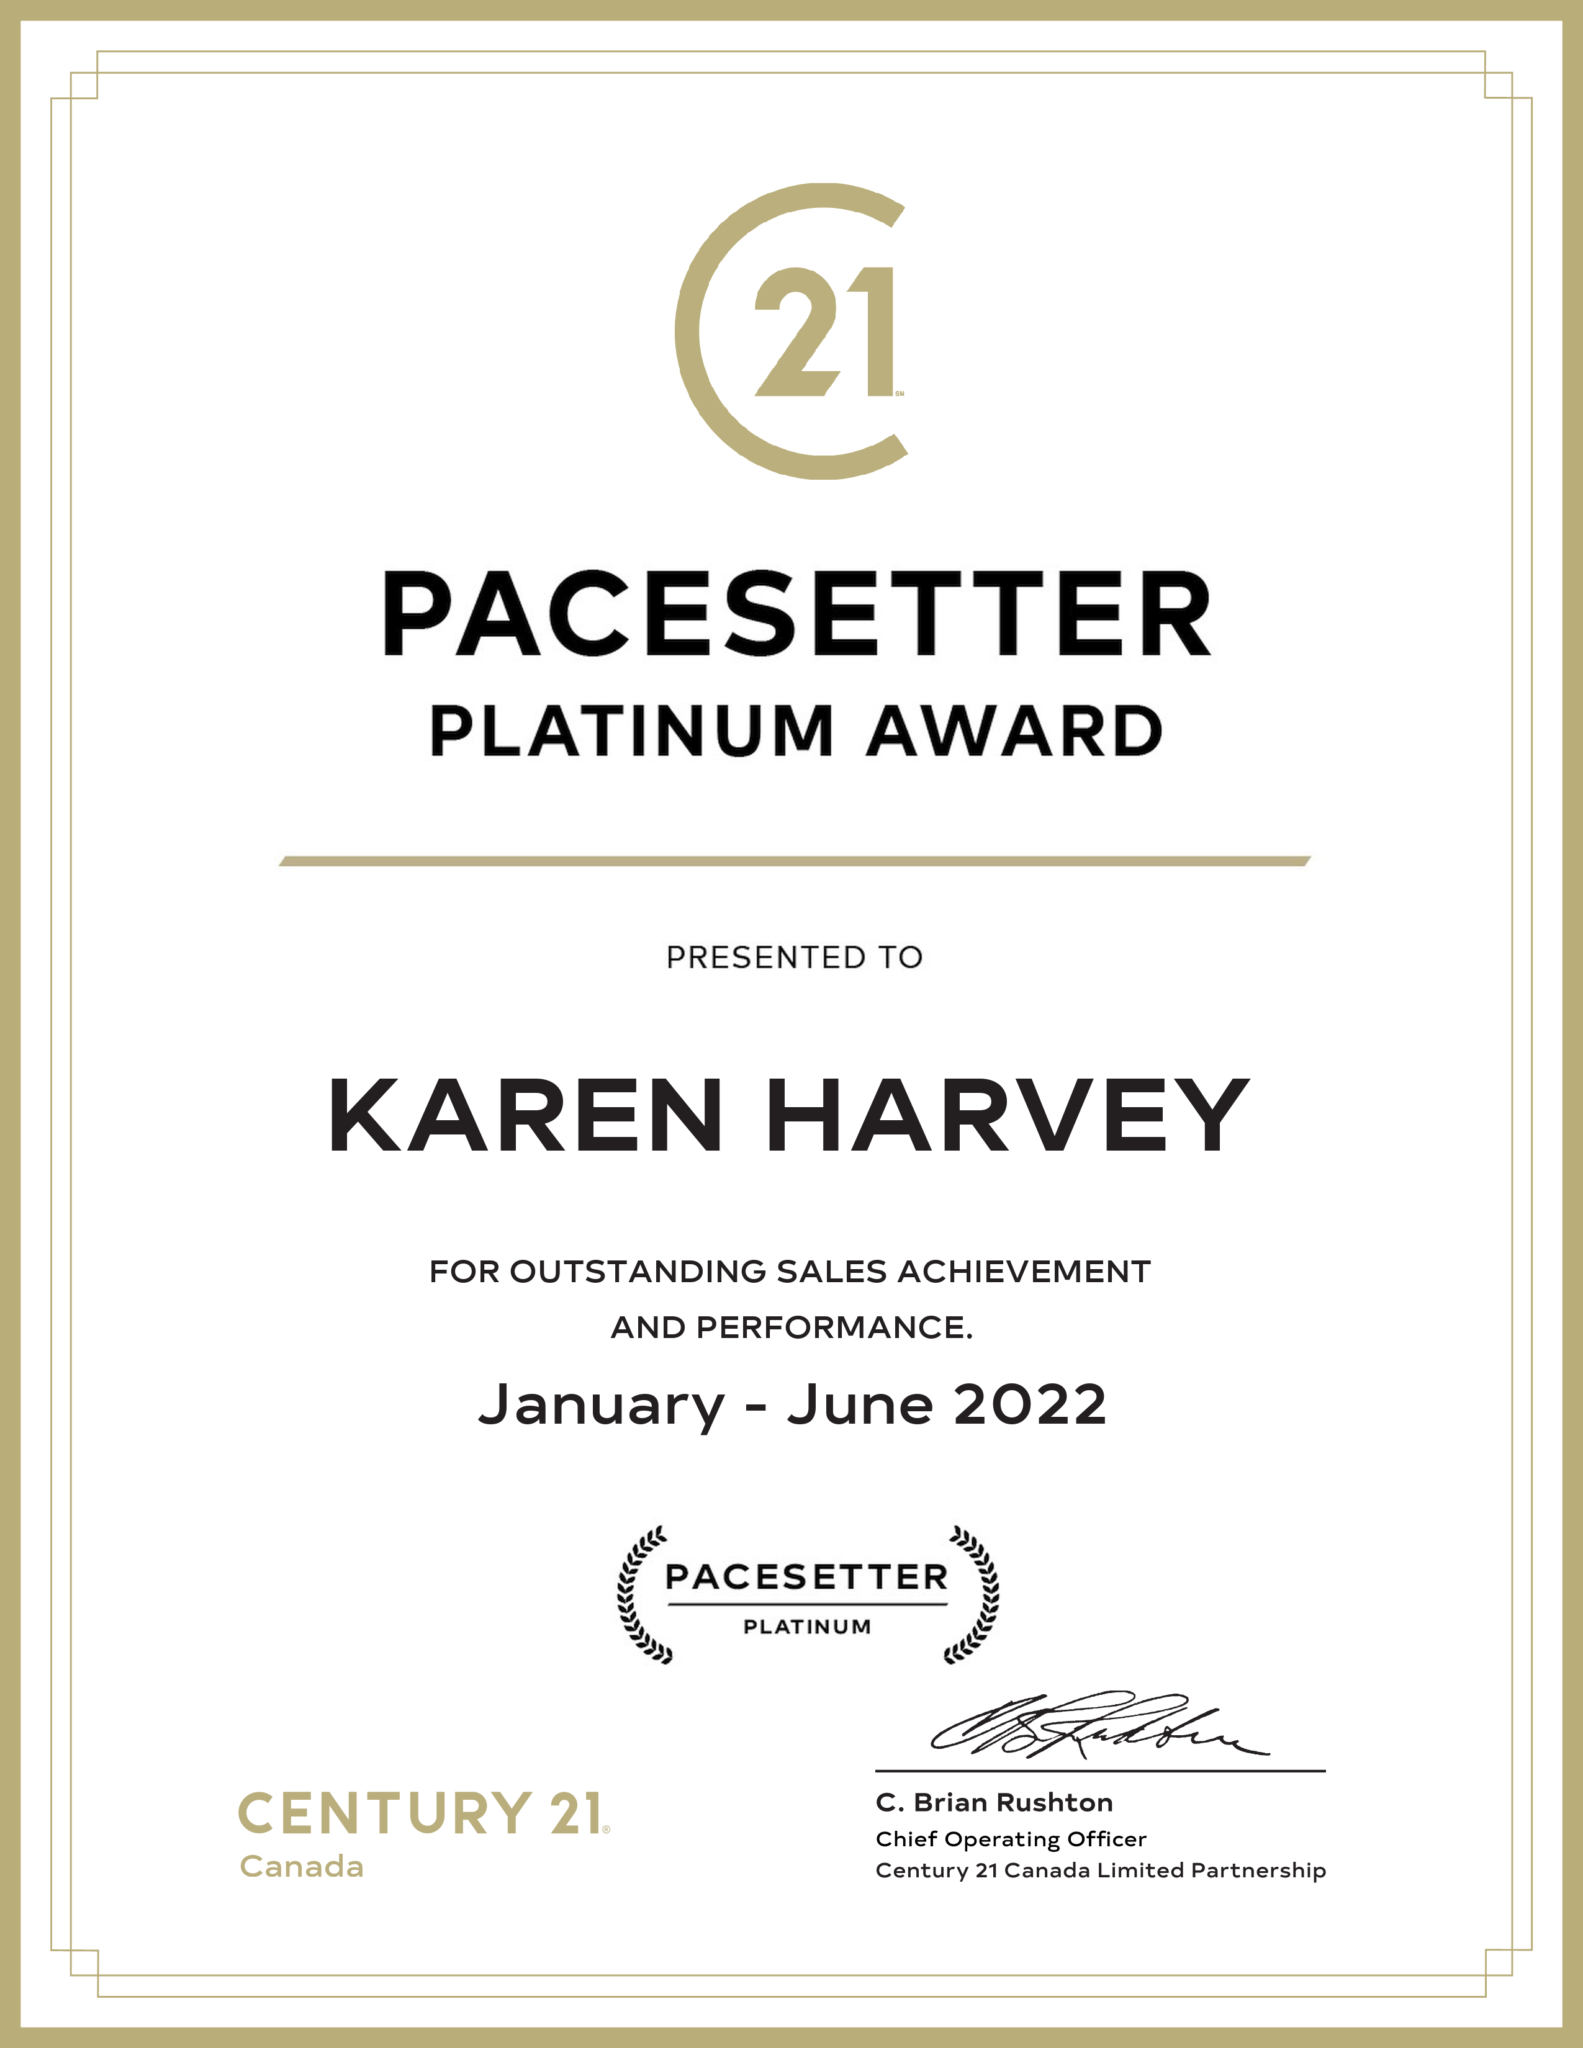 Karen Harvey - PACESETTER AWARD 2022 - IMAGE